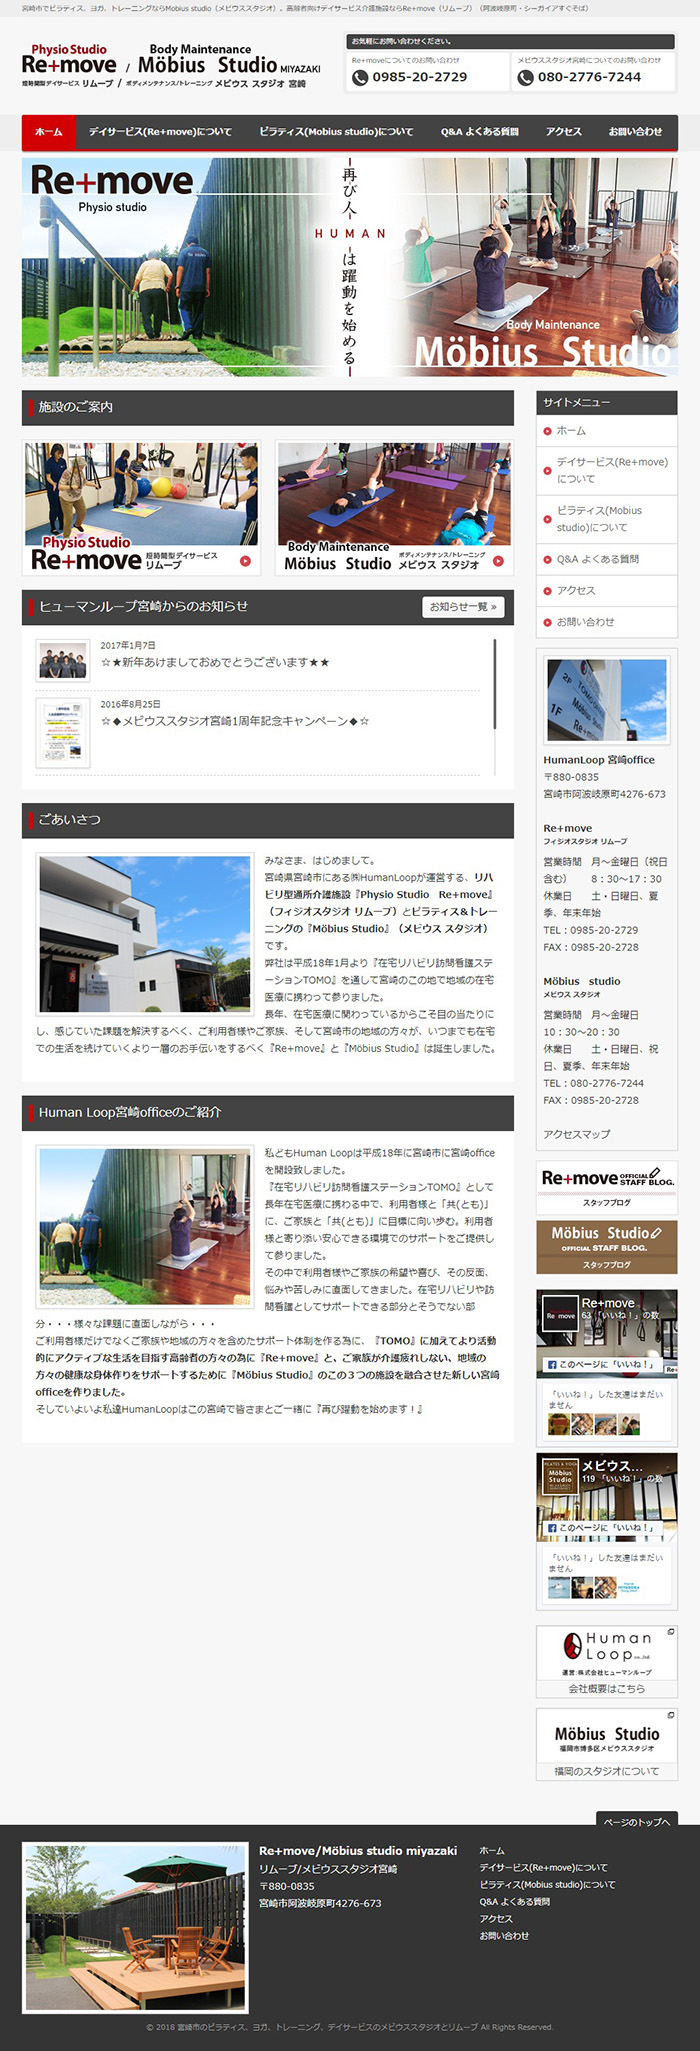 リムーブ/メビウススタジオ宮崎 様ホームページ制作実績 デスクトップイメージ